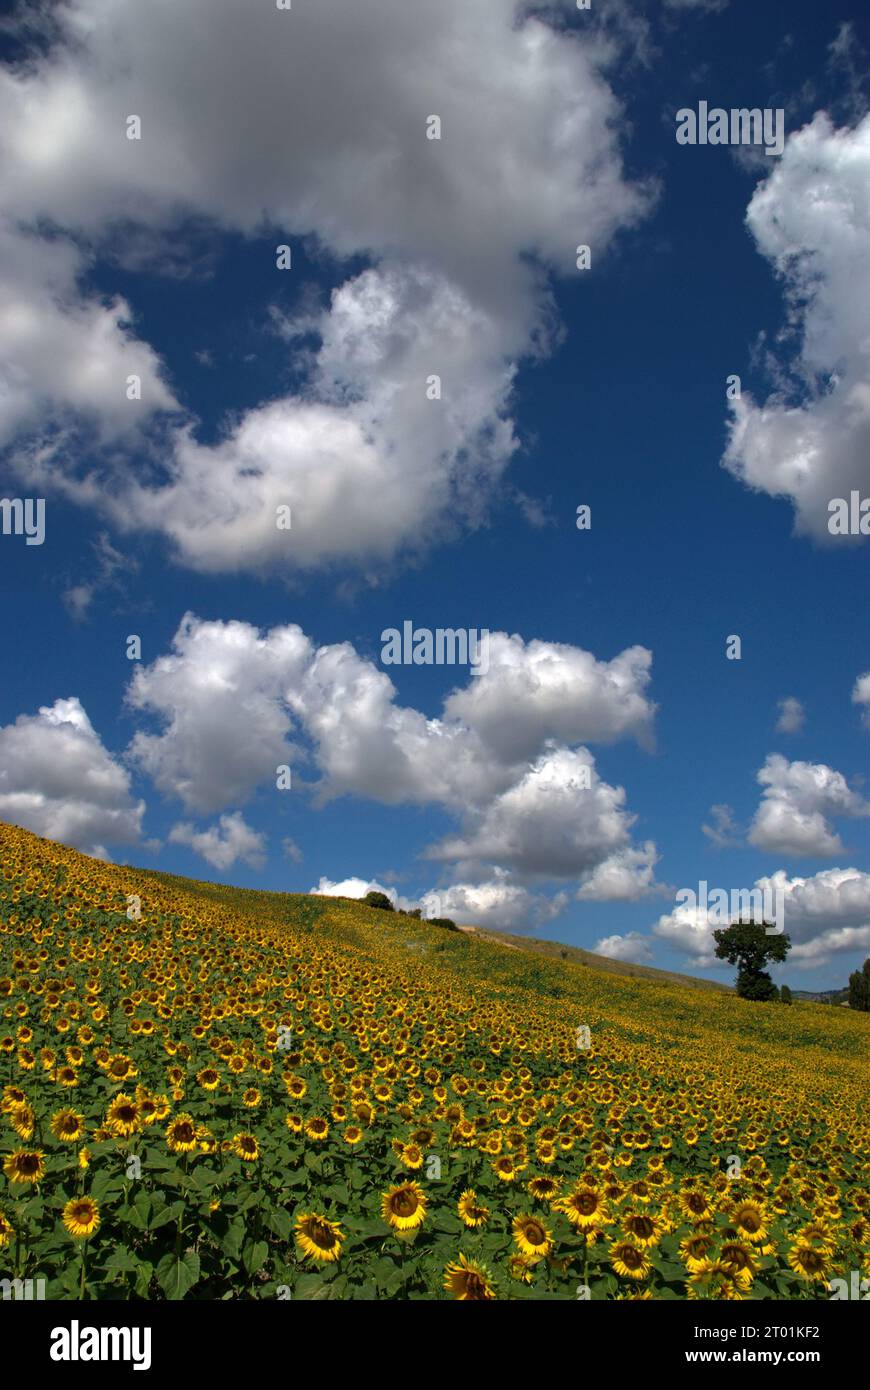 girasoli in un campo di collina contro un cielo con nuvole Banque D'Images